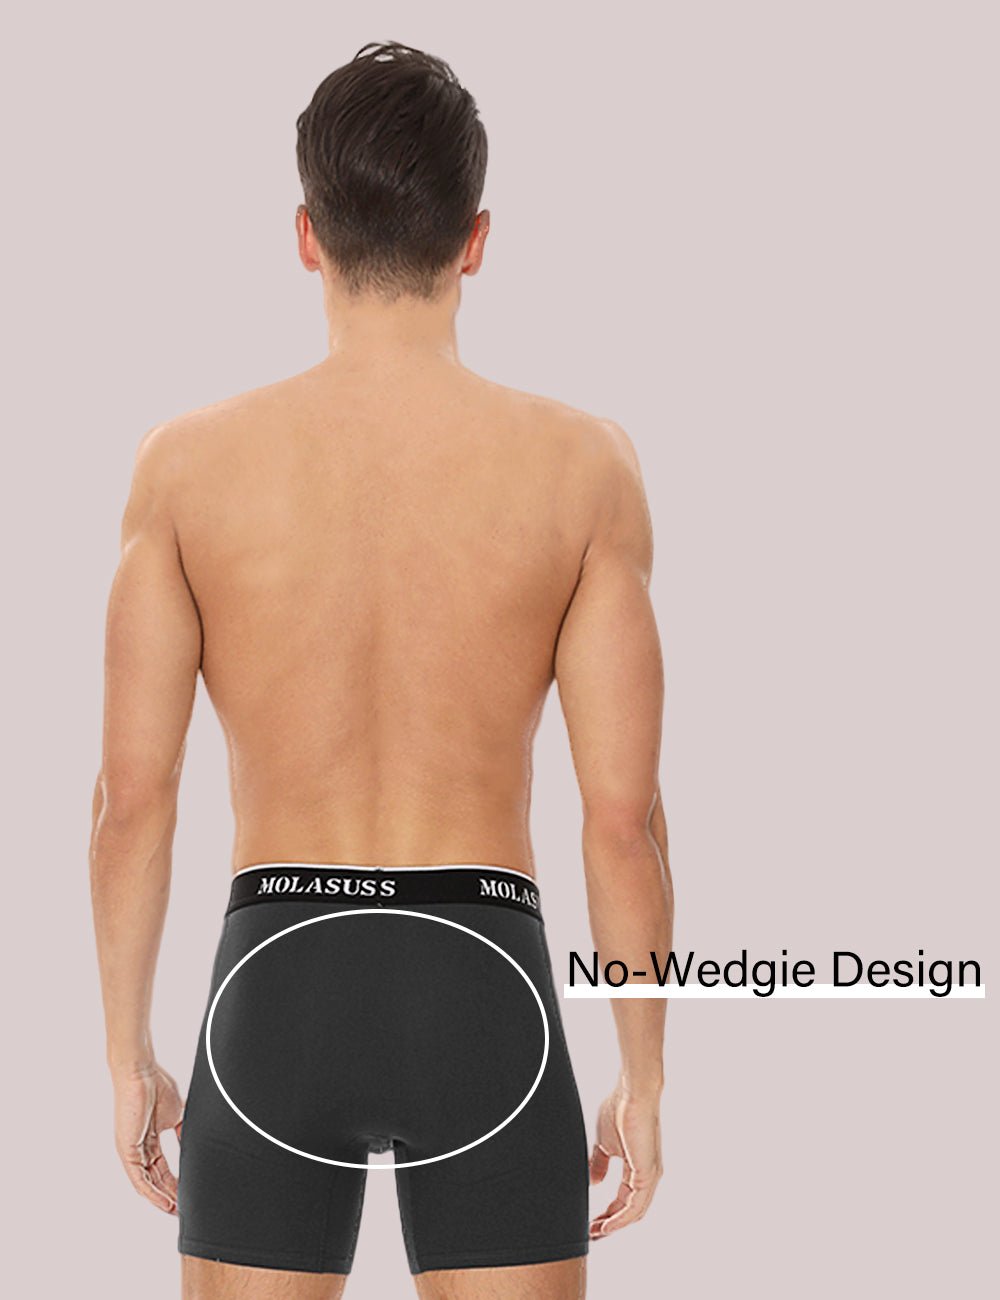 Starter Cotton Mens Briefs Breathable Underwear for Men, Black XL 8-Pack 